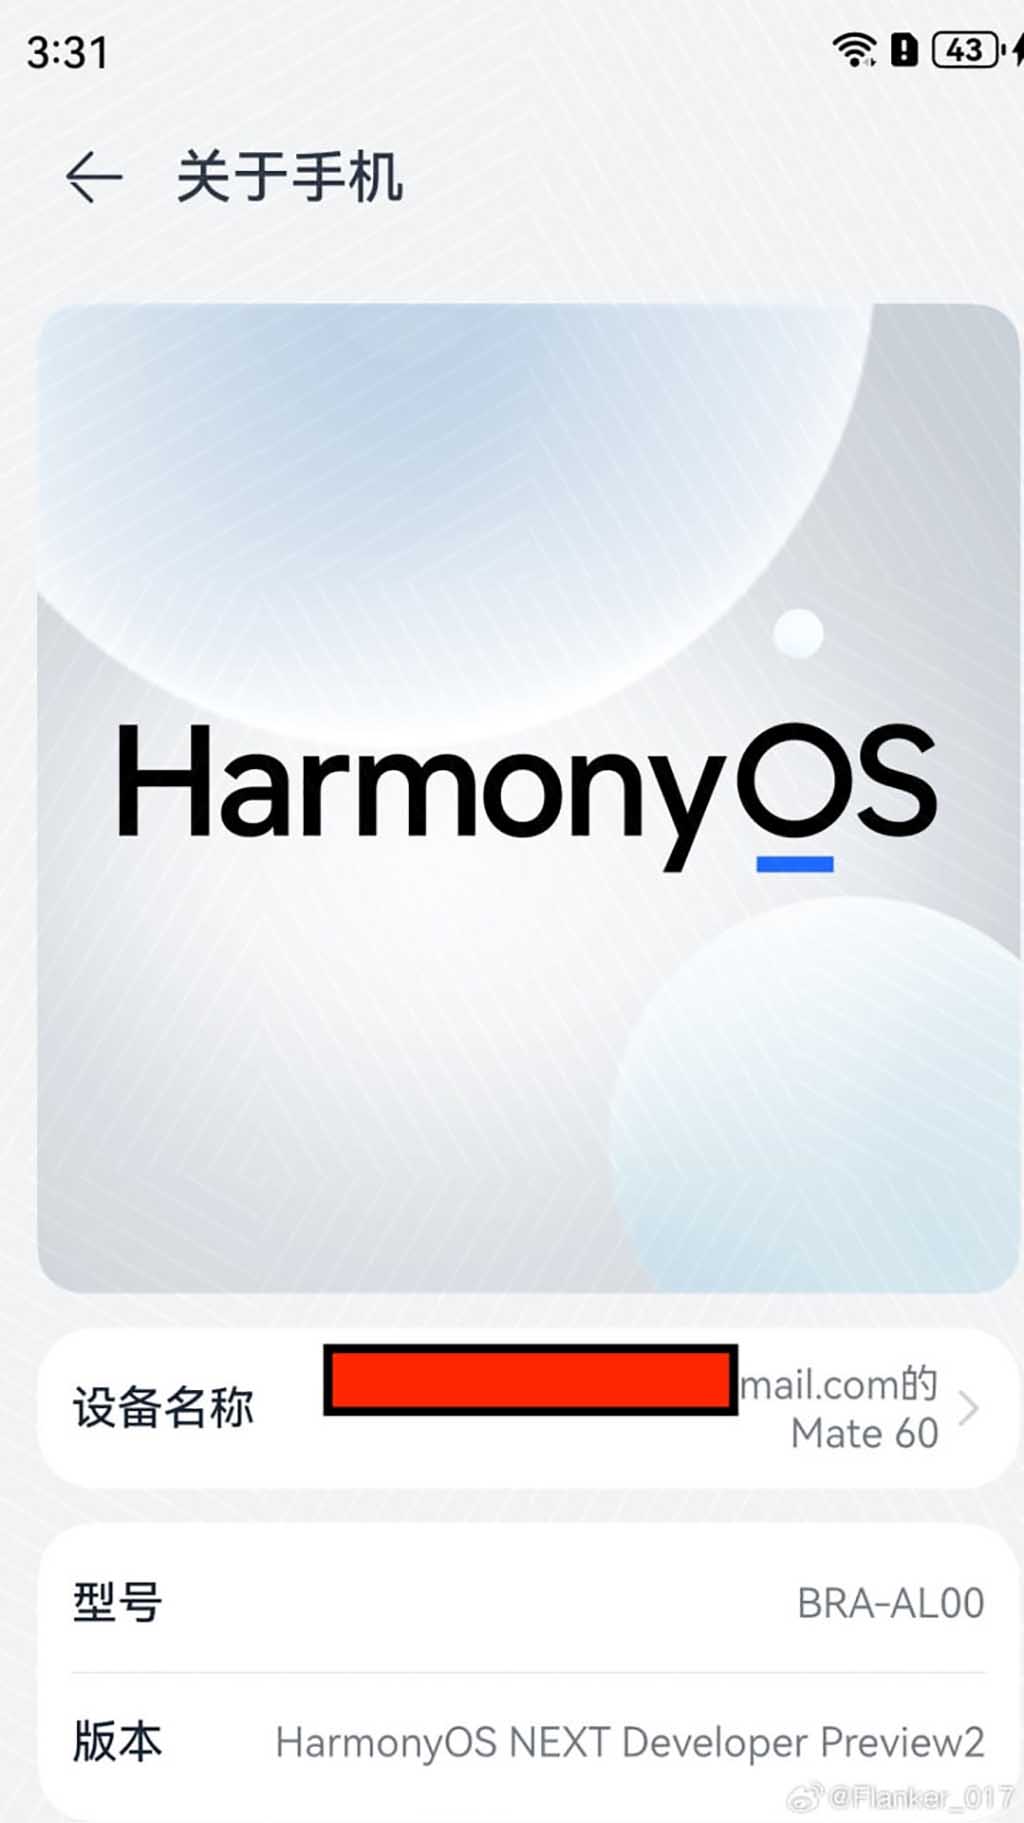 HarmonyOS NEXT home screen UI